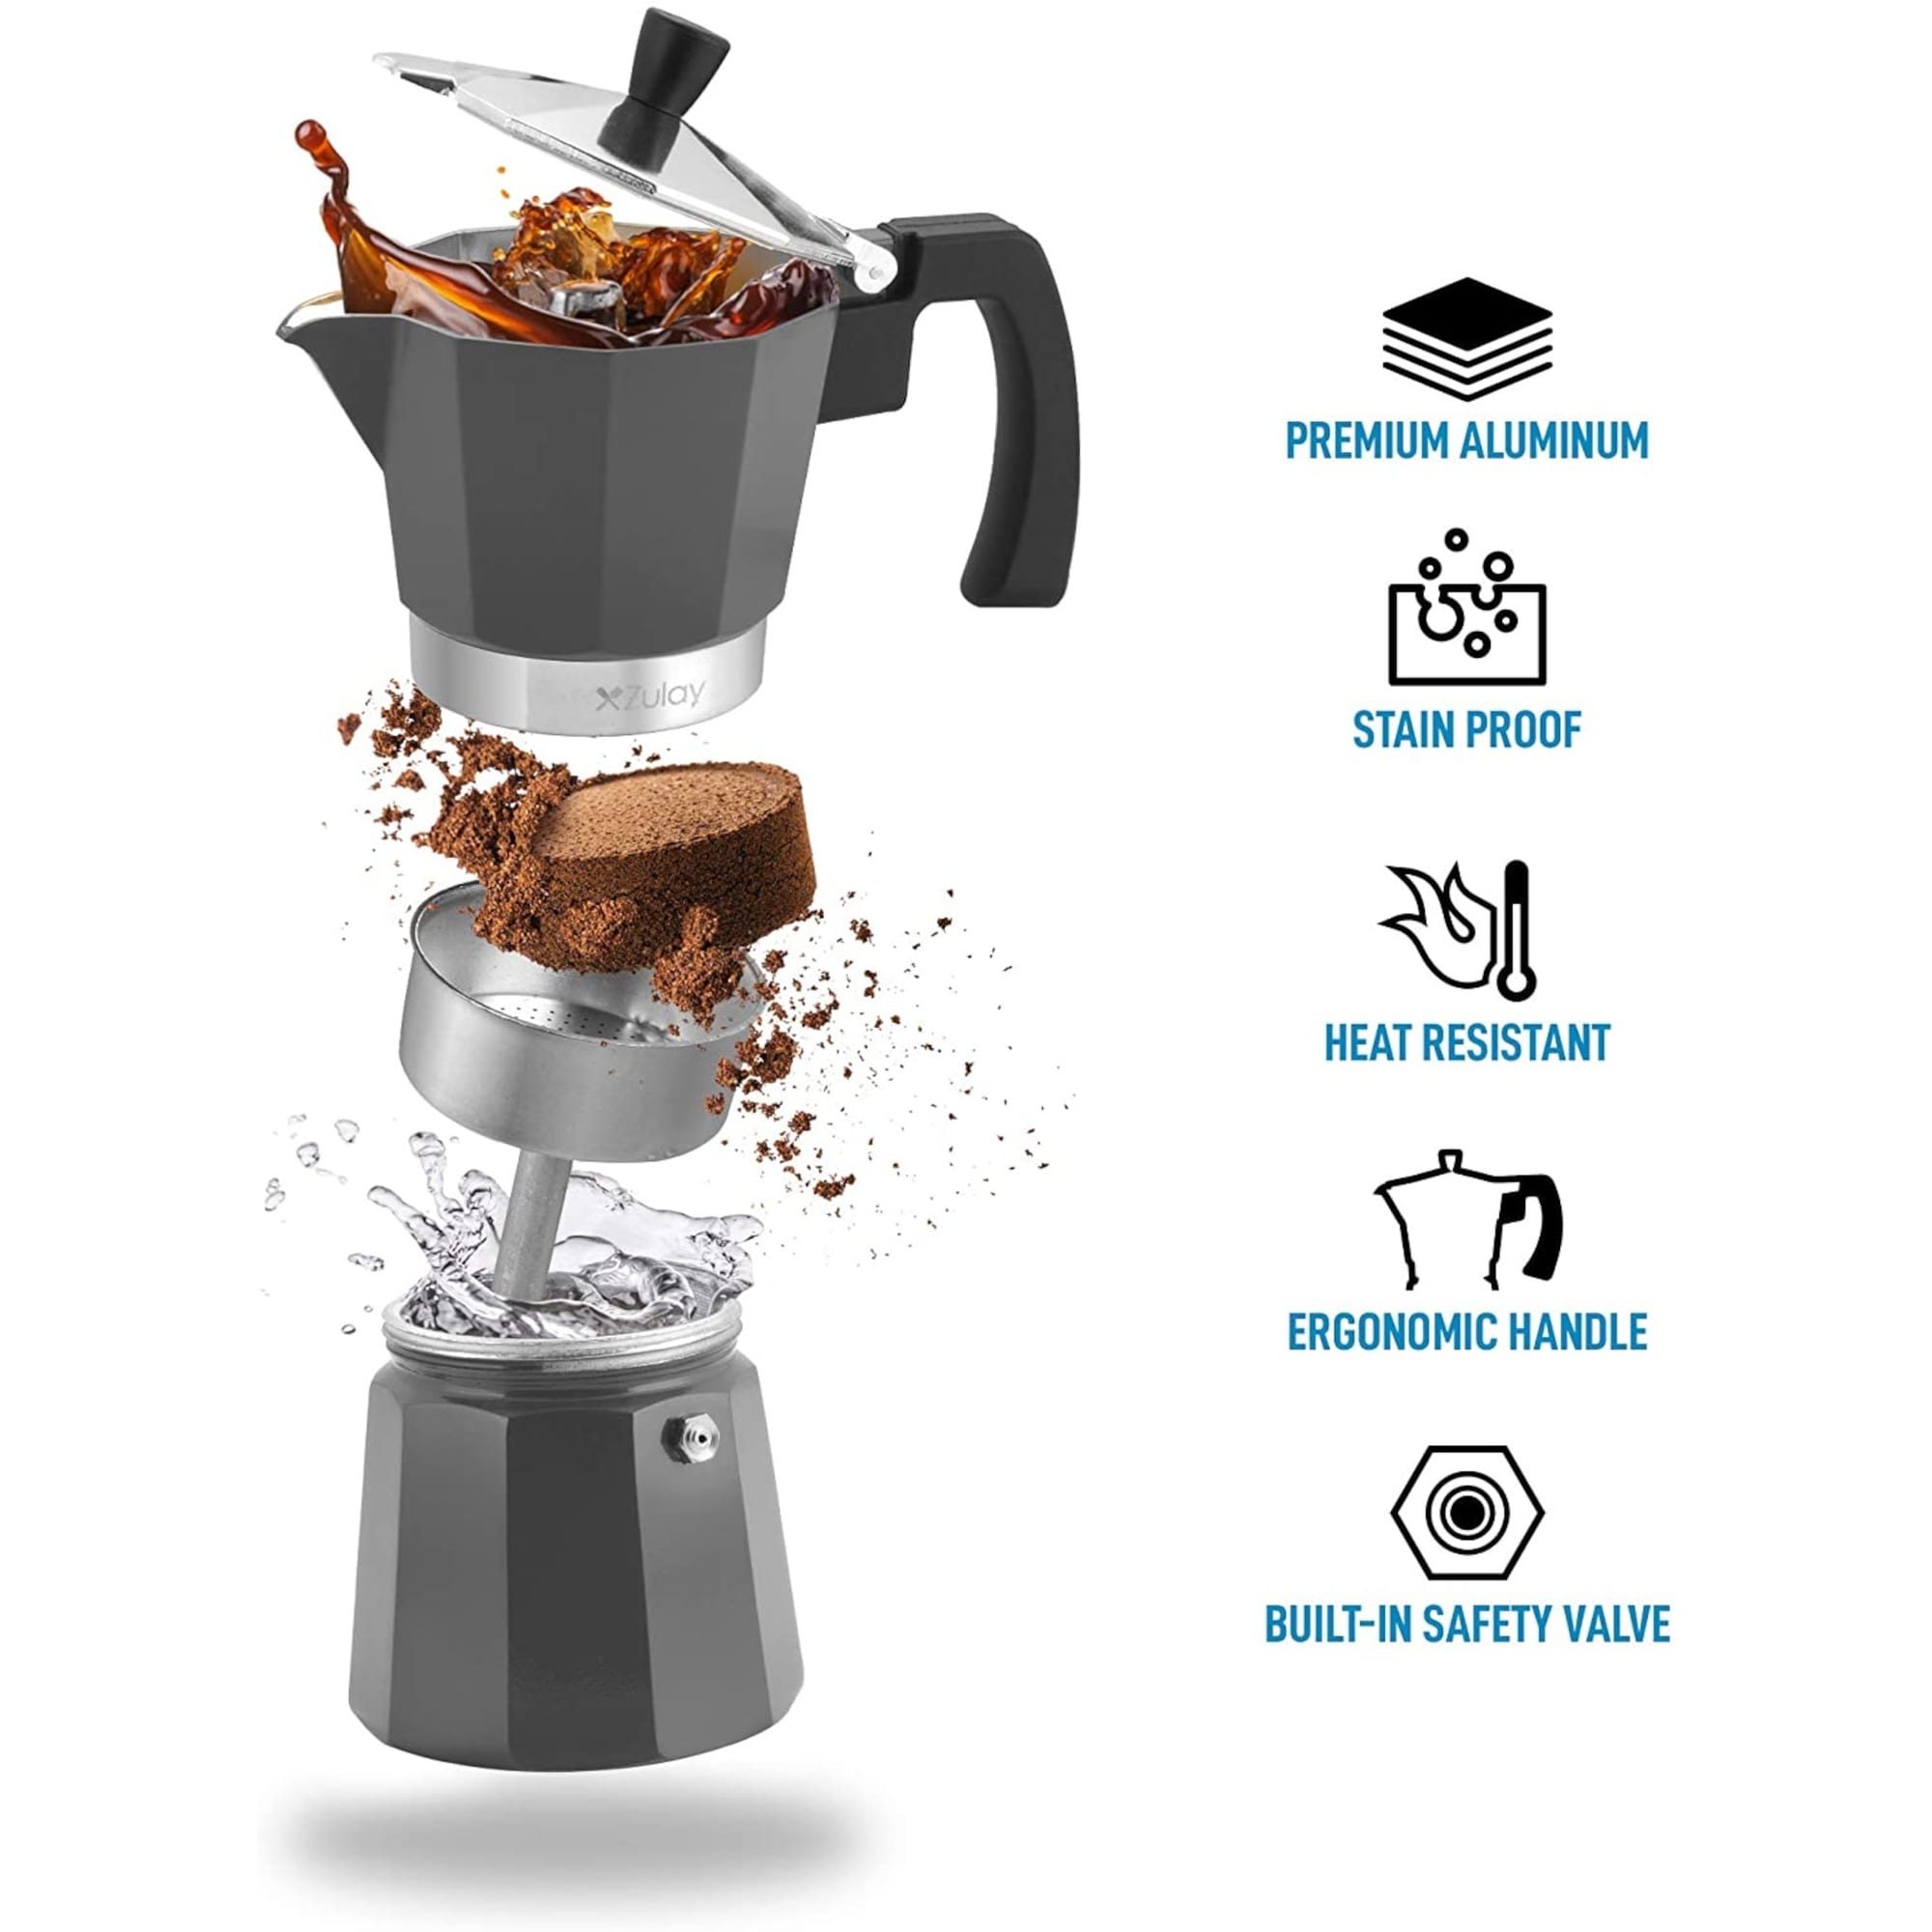 https://ak1.ostkcdn.com/images/products/is/images/direct/6fcfe59c4ecebb7f0c3fade85018054d43ac37f7/Zulay-Classic-Stovetop-Espresso-Maker-5.5-Espresso-Cup-Pot---Dark-Grey.jpg